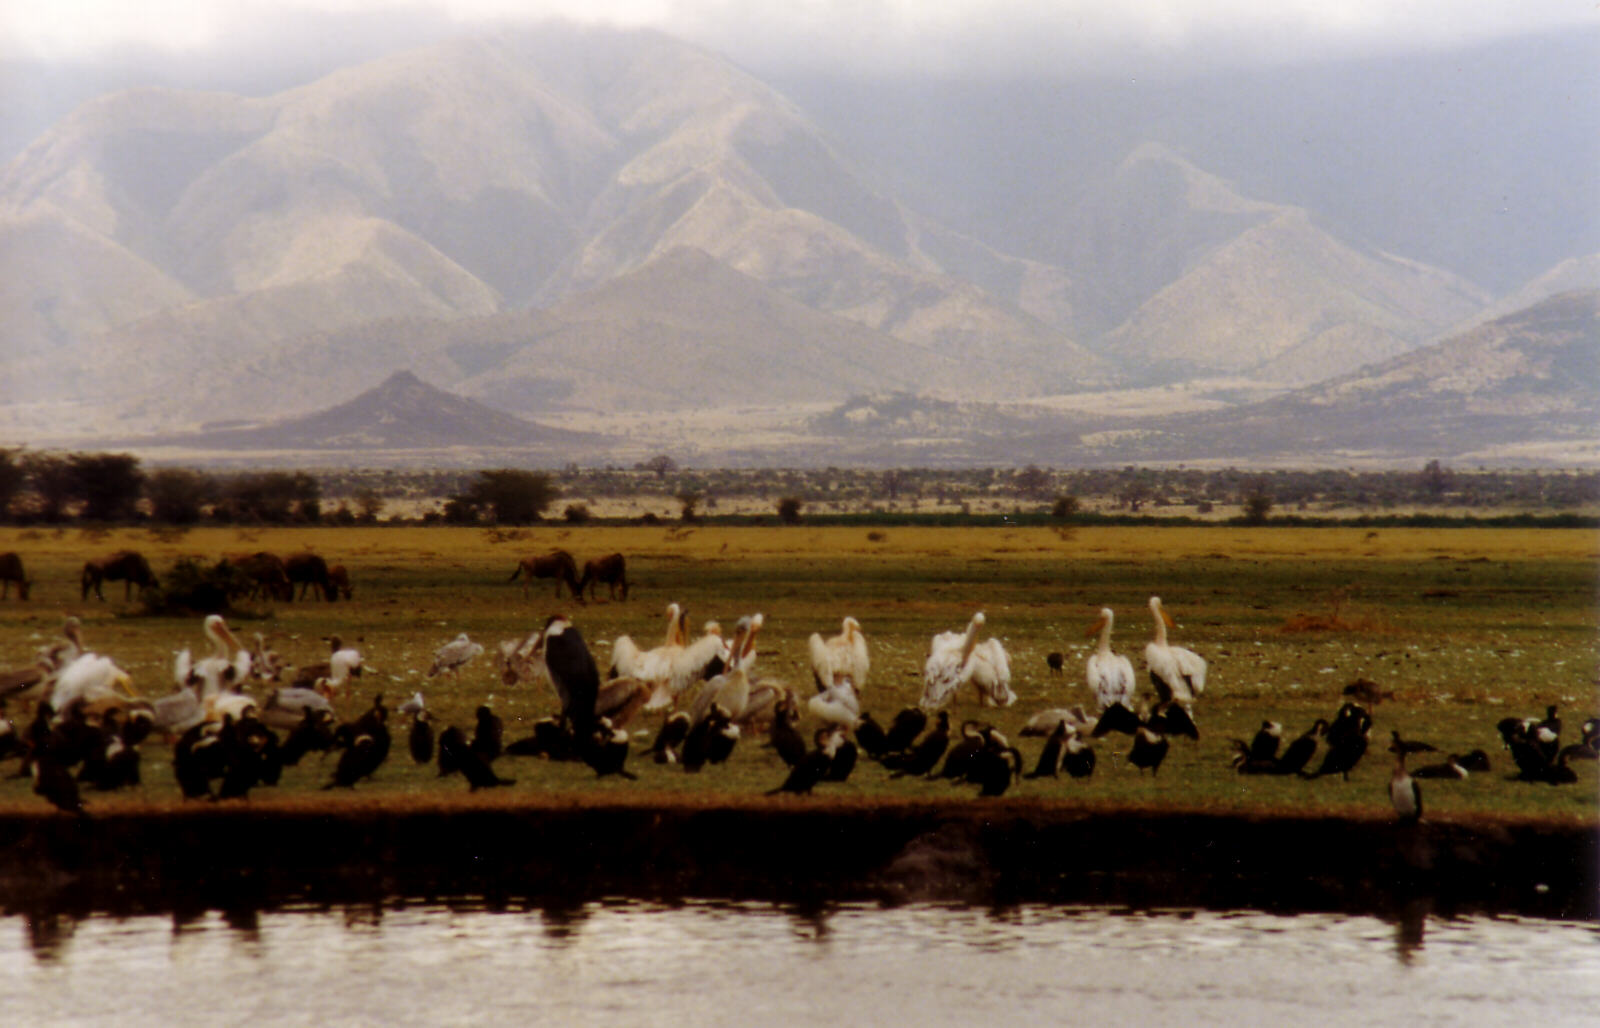 Birds and mountains at Lake Manyara, Tanzania